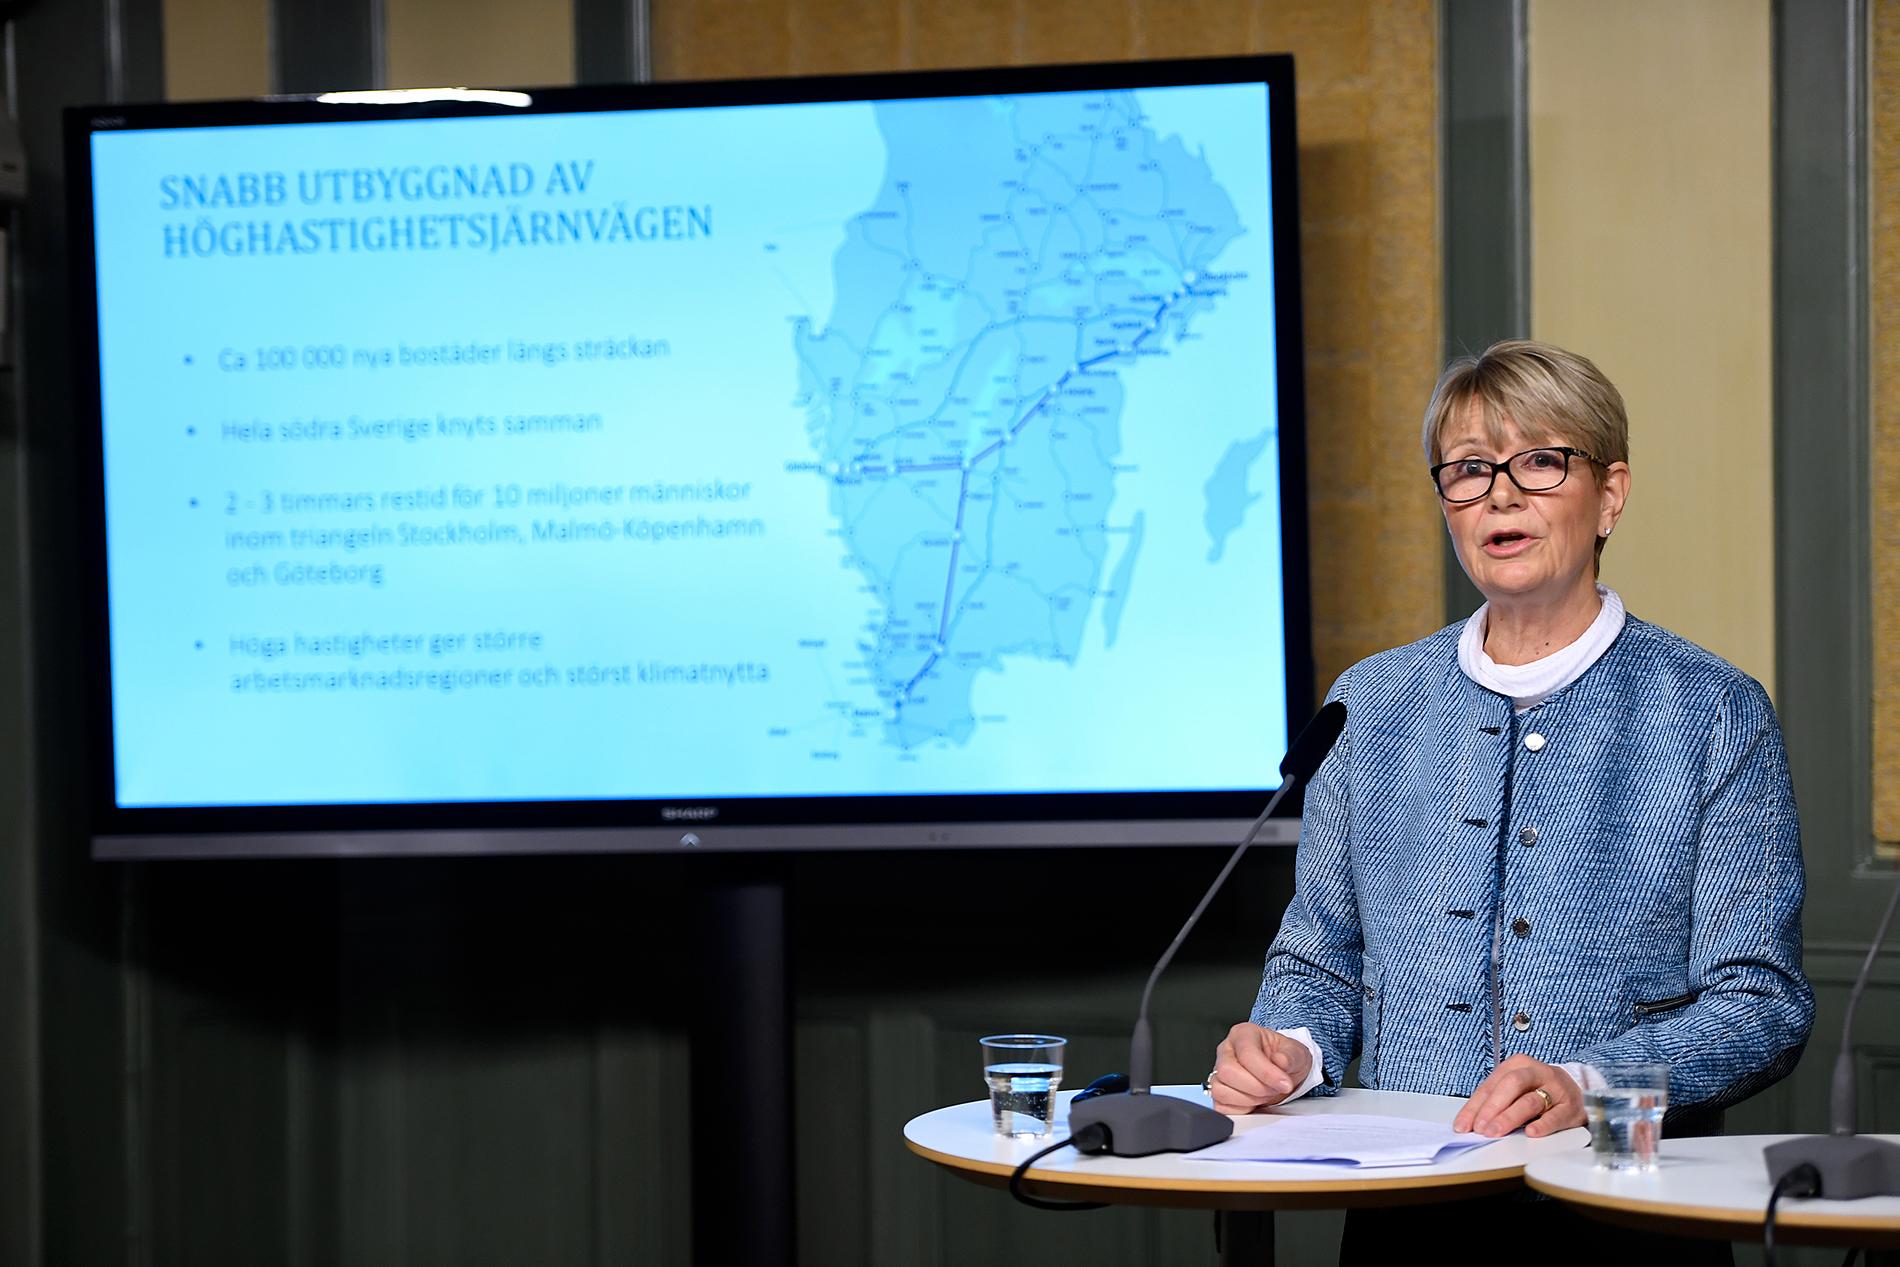 Utredaren Catharina Håkansson Boman presenterar slutbetännkandet av Sverigeförhandlingen om höghastighetståg i Sverige.